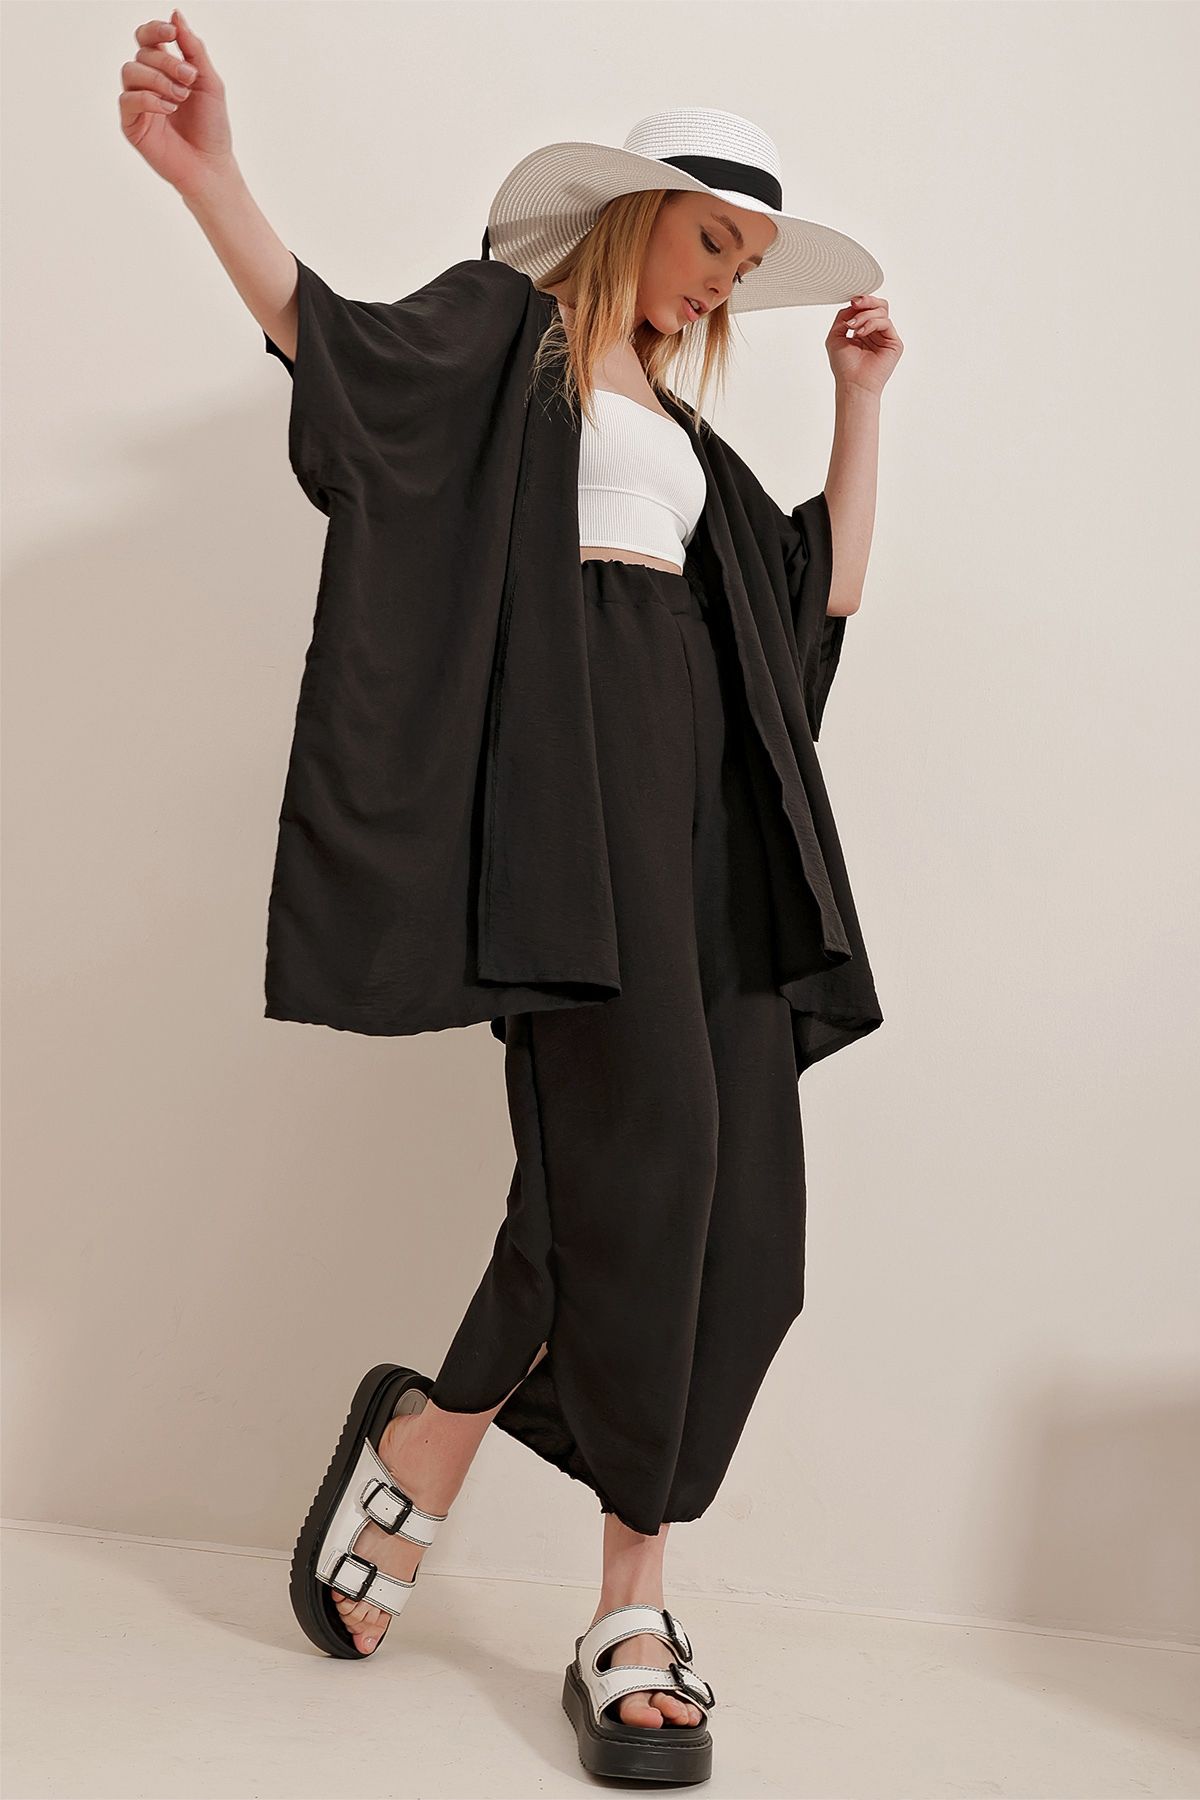 Trend Alaçatı Stili Kadın Siyah Paçası Yırtmaçlı Kendinden Dokulu Pantolon Ve Ceket İkili Takım ALC-752-001